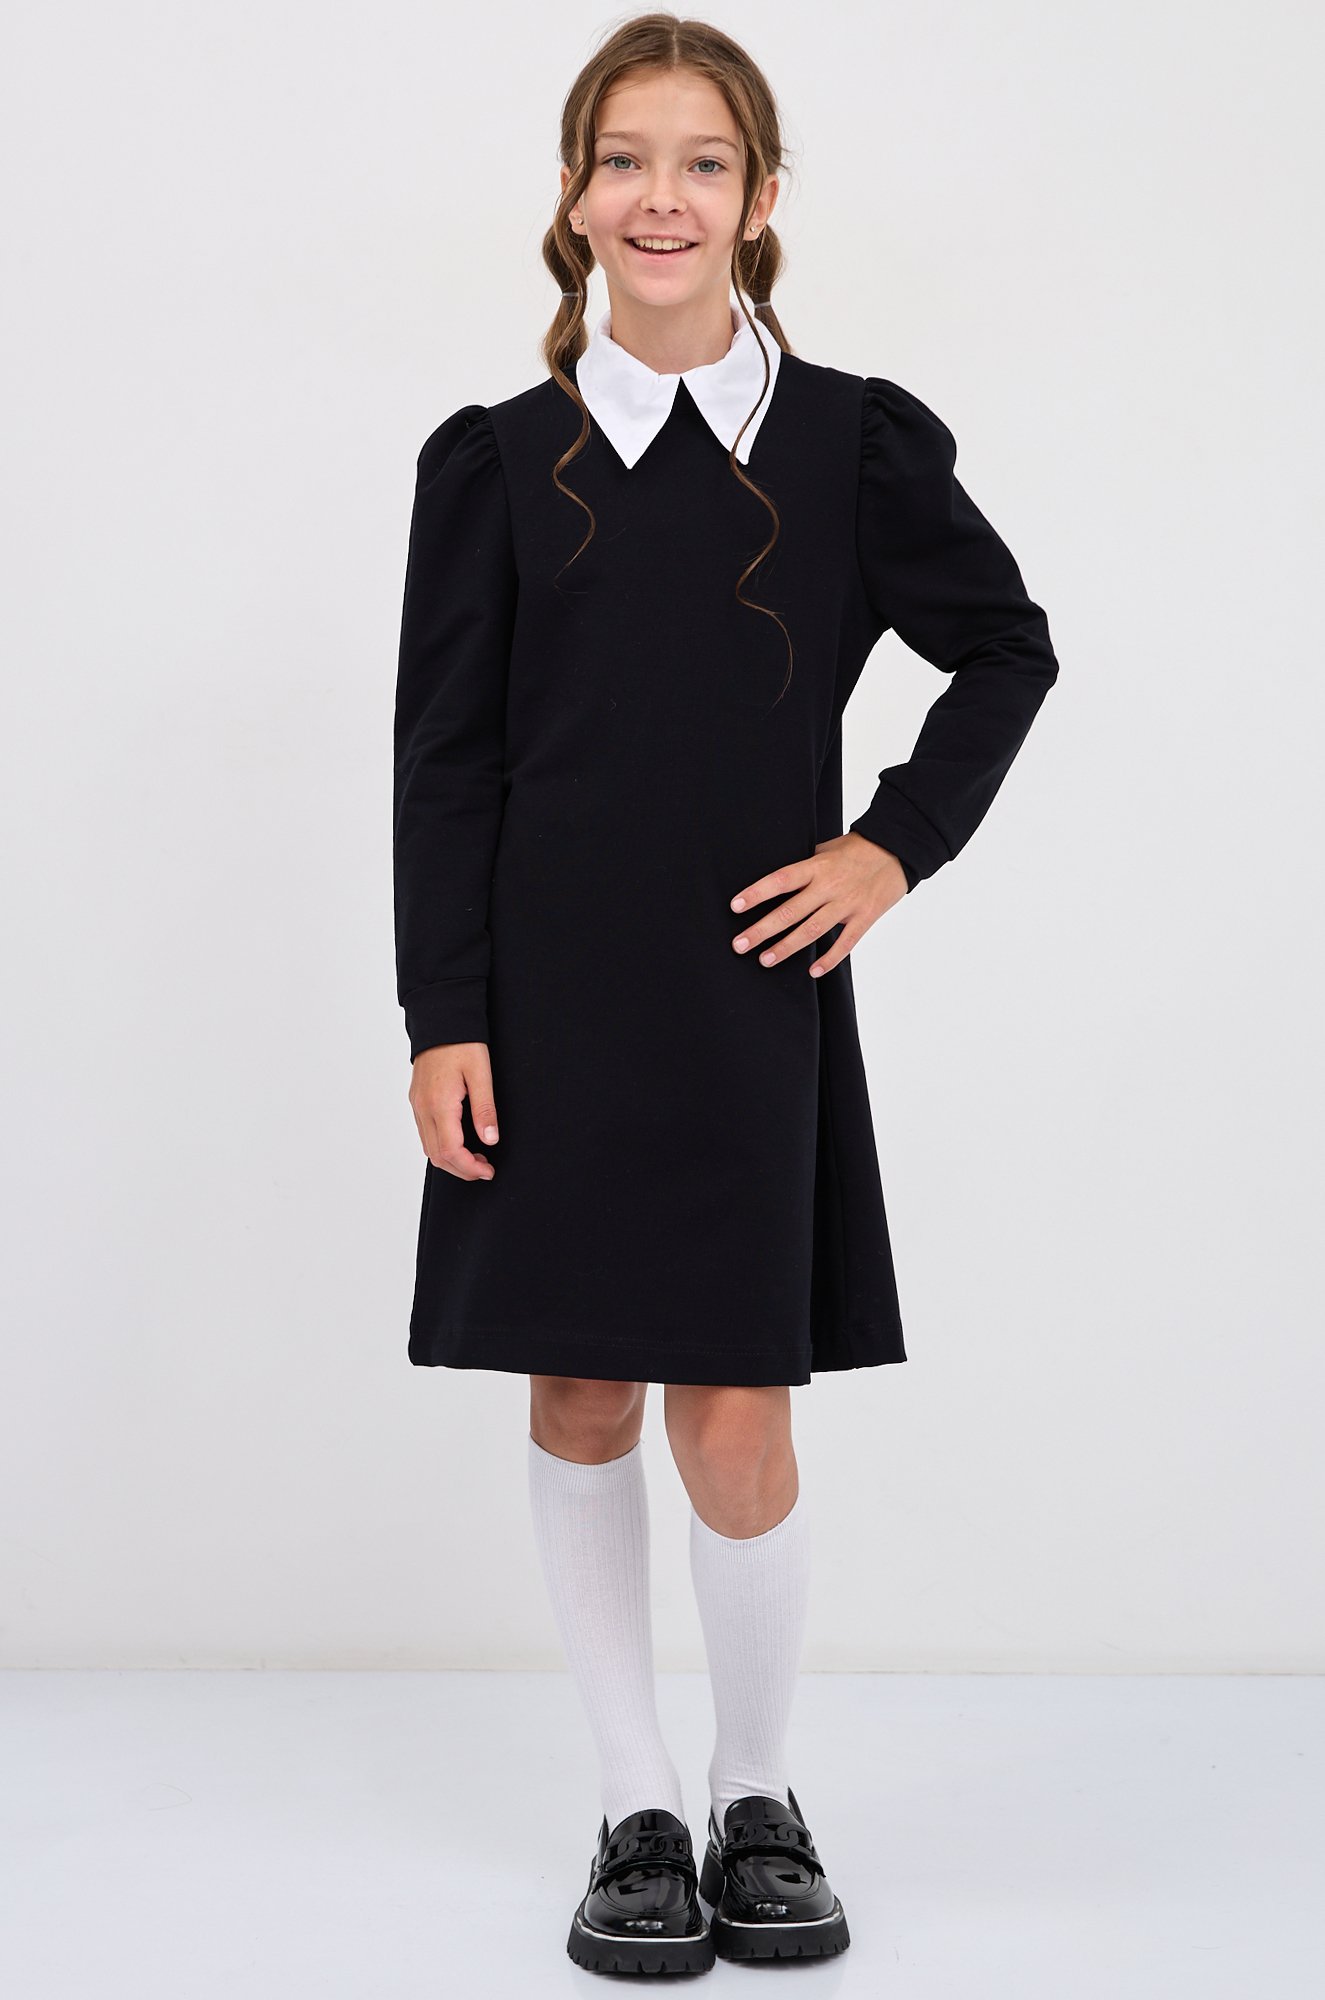 Школьное платье для девочки из футера двухнитки Bonito